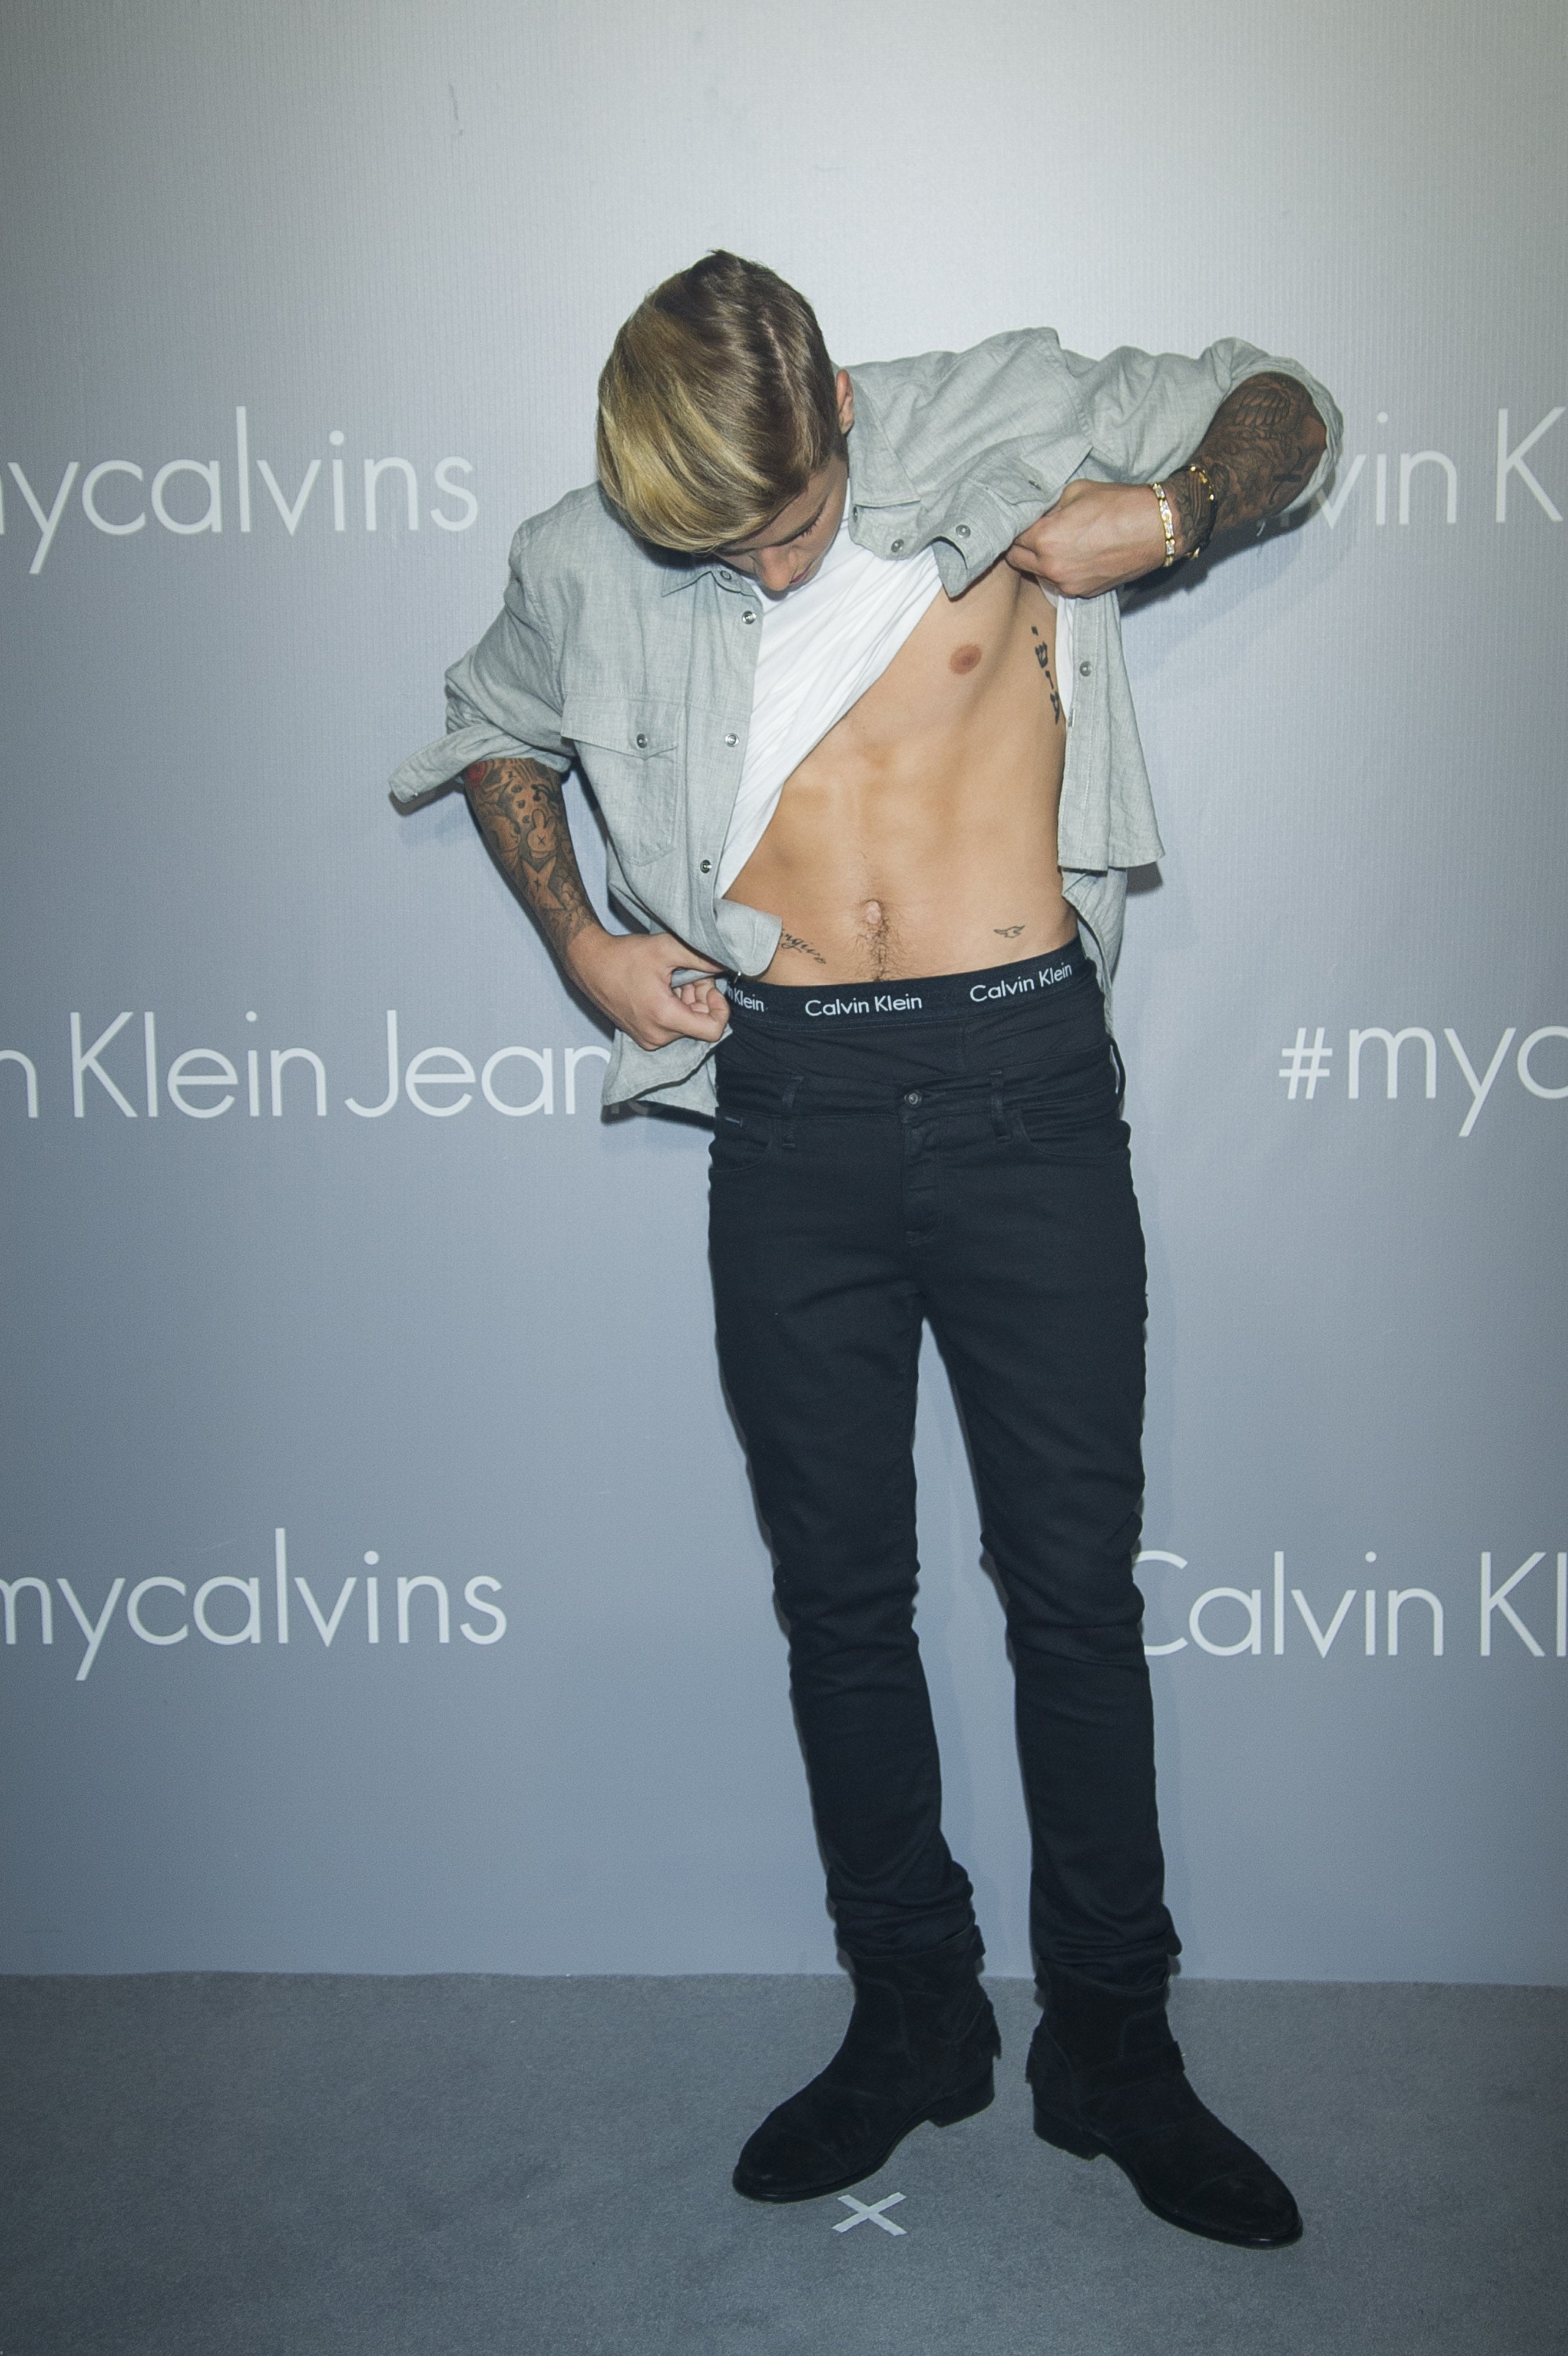 Calvin Klein underwear Archives - Inside Retail Australia